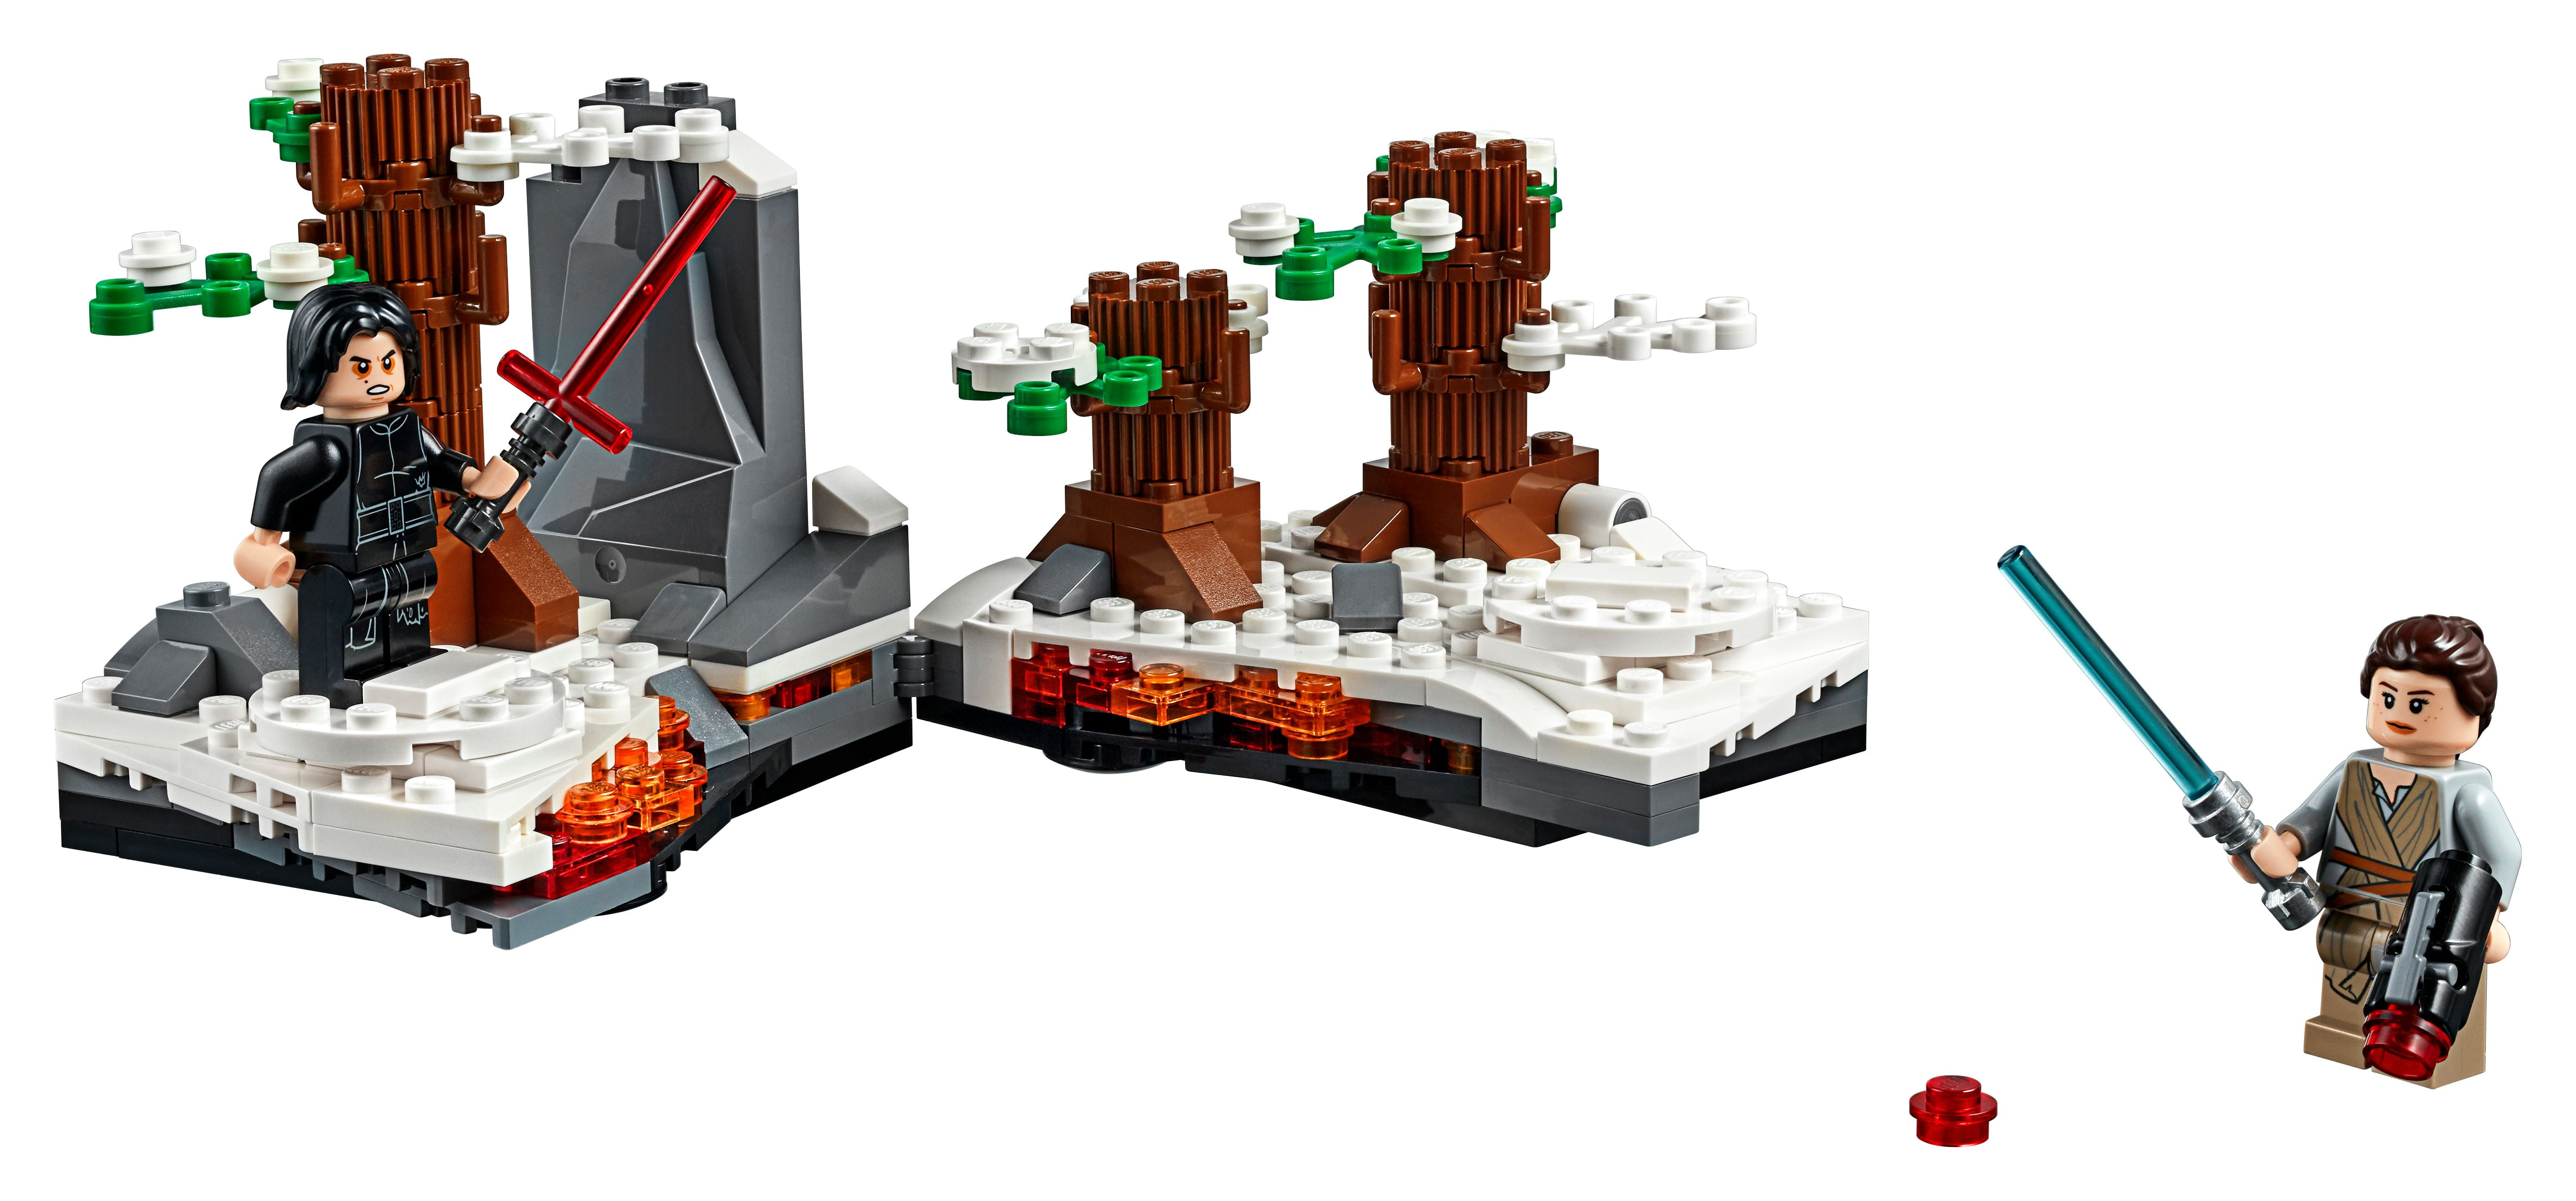 Lego Star Wars Combat Lightsaber Duel On Starkiller Base